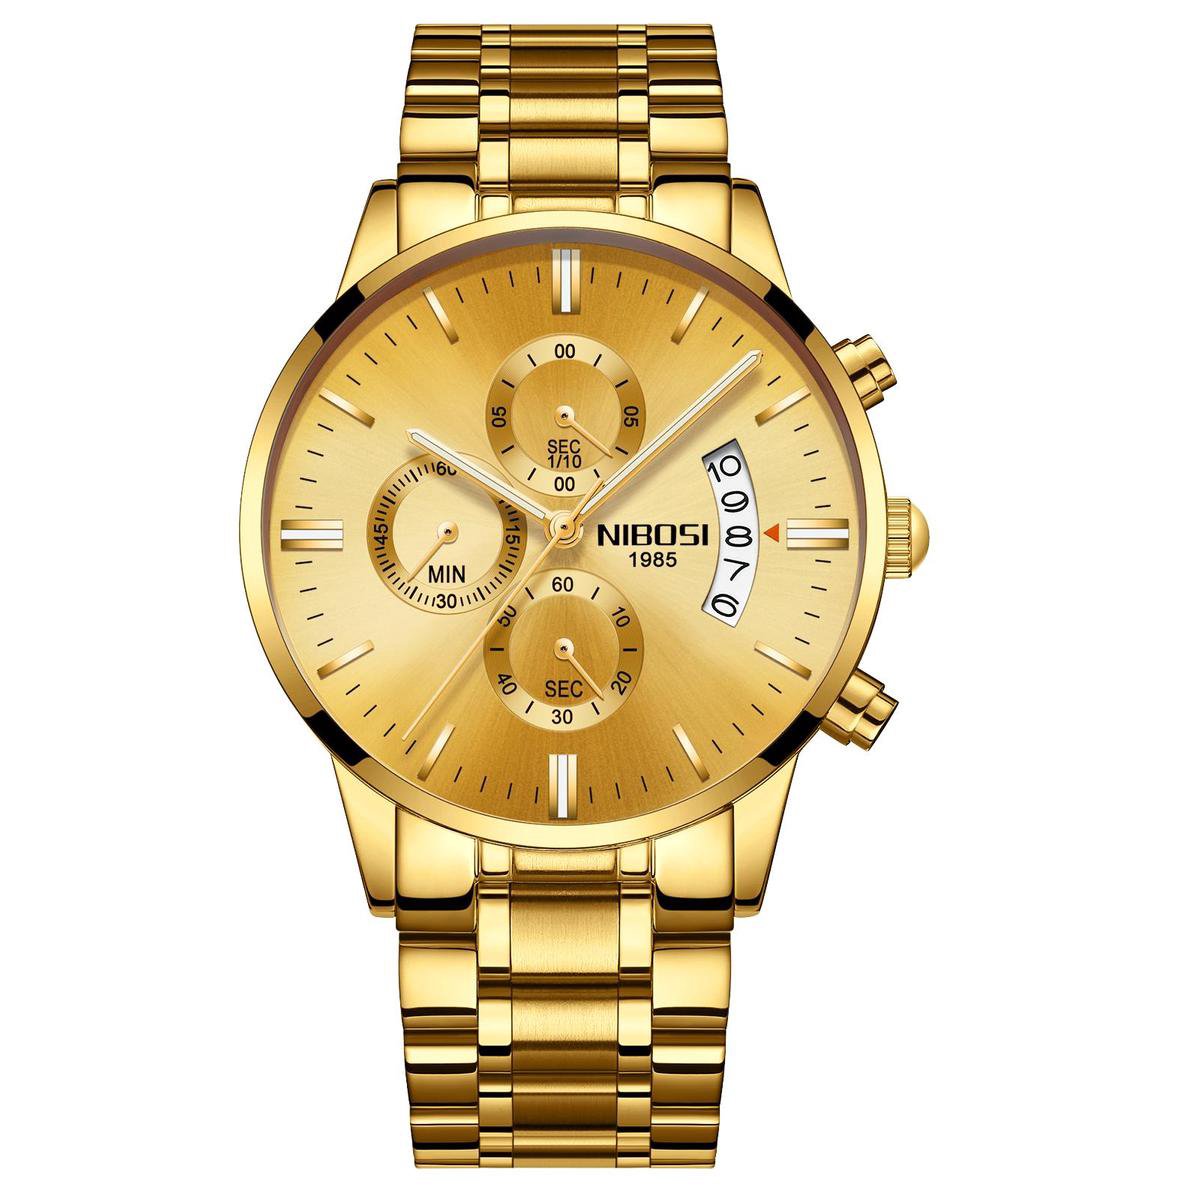 NIBOSI Horloges voor mannen - Horloge mannen - Luxe goud op goud Design - Heren horloge - Ø 42 mm - Goud - Roestvrij Staal - Waterdicht tot 3 bar - Chronograaf - Geschenkset met verstelbare pin